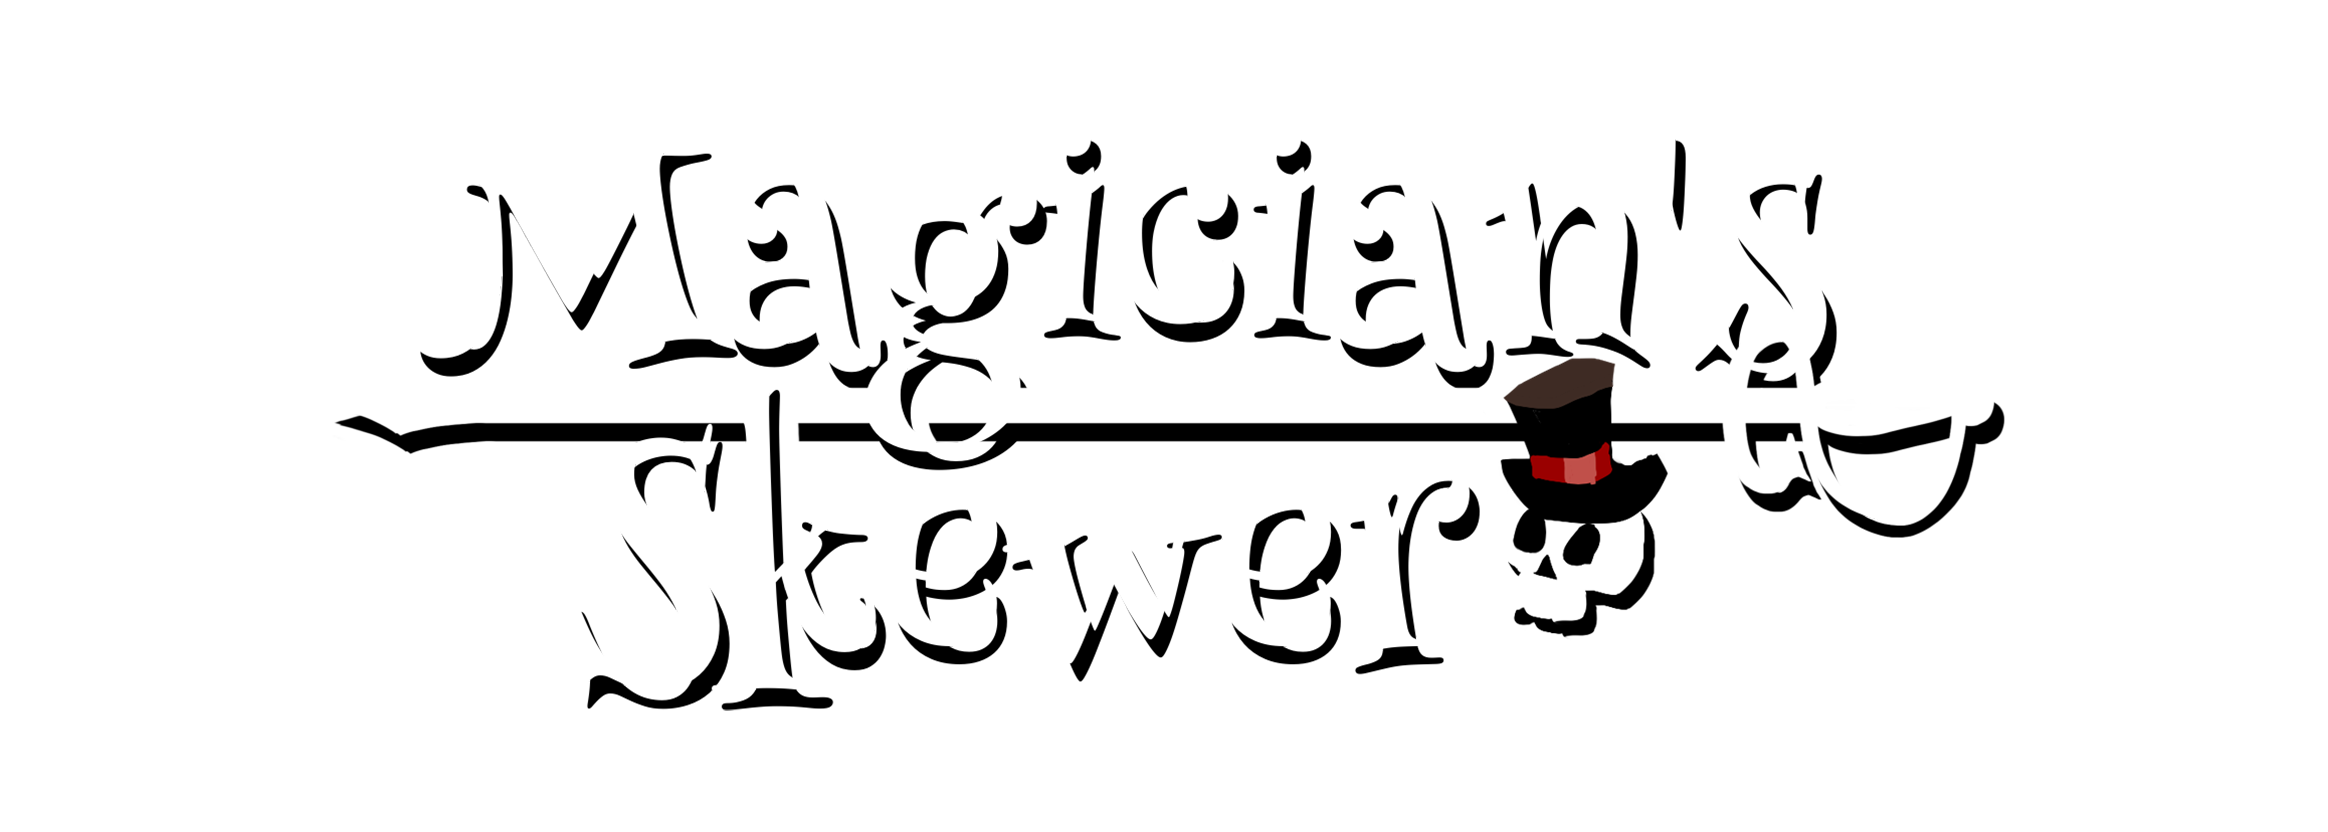 Magician's Skewer